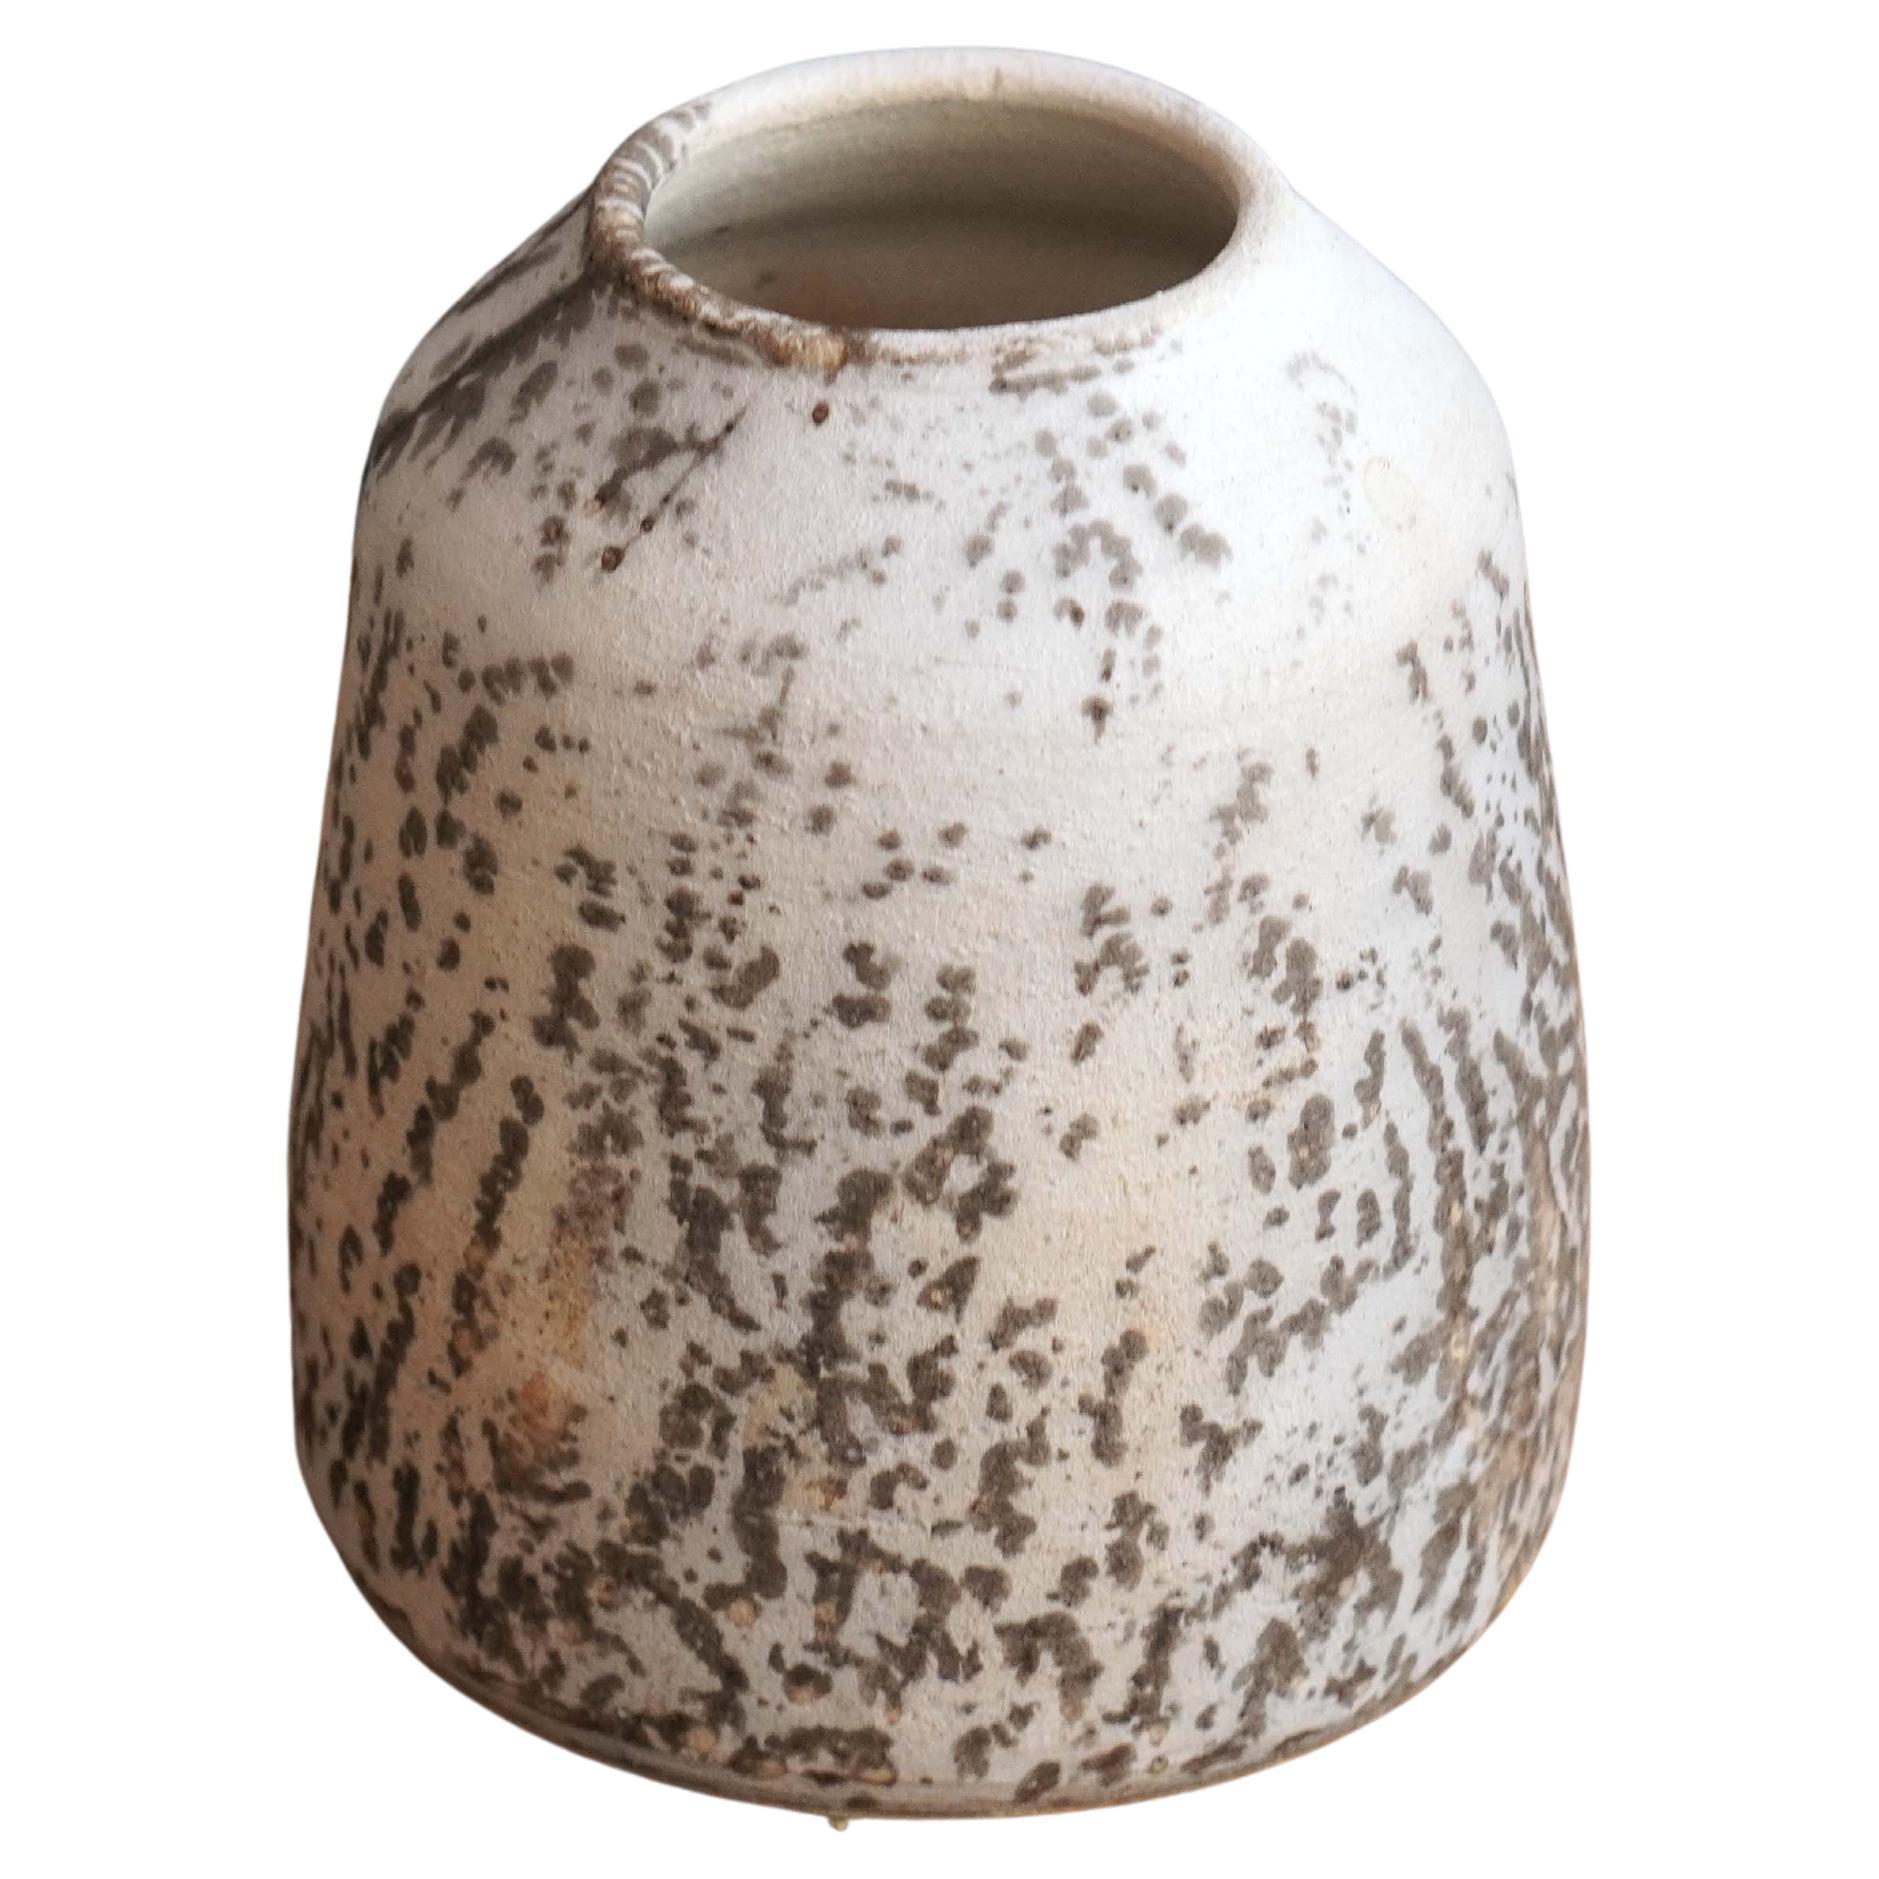 Suzu Raku-Keramikvase - Obvara - Handgefertigtes Keramik-Geschenk